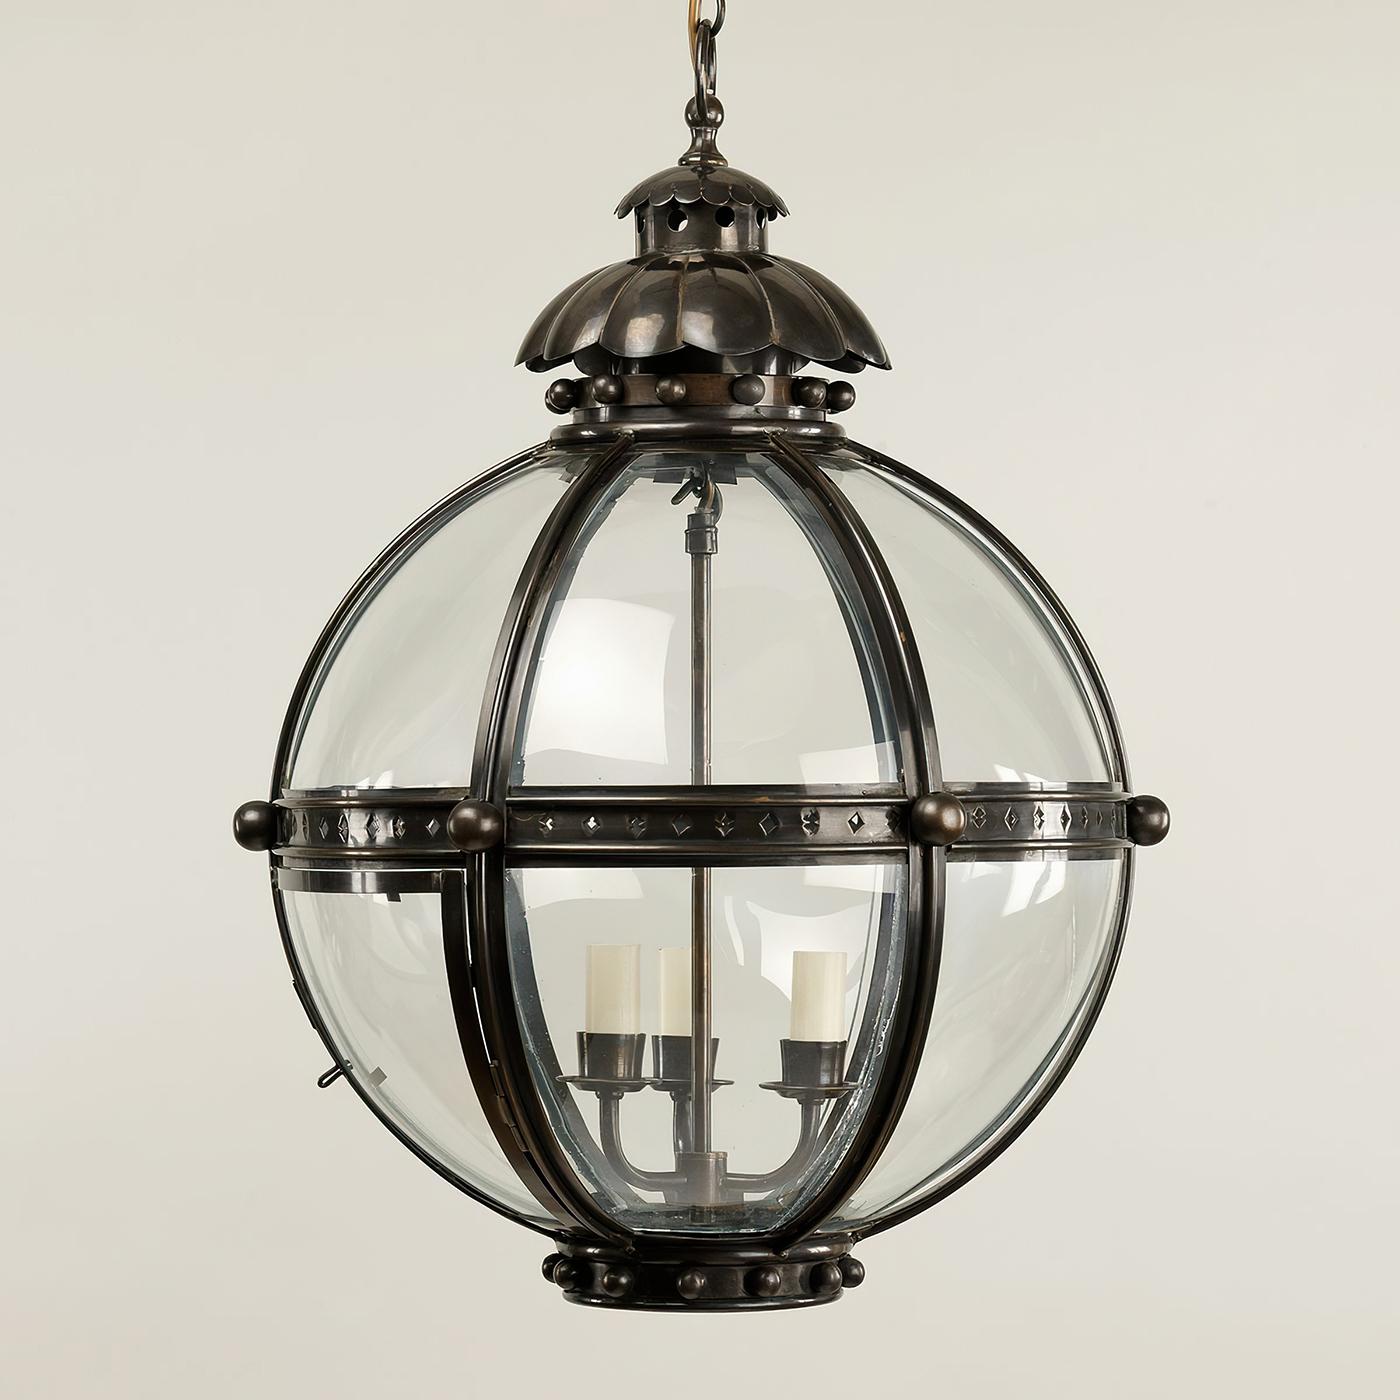 La lanterne Globe est inspirée d'une antiquité similaire du XIXe siècle. La forme de globe de ce luminaire dégage de la force et est renforcée par les finitions en laiton bronzé massif et le sommet en acanthe.

La lanterne est fabriquée à la main